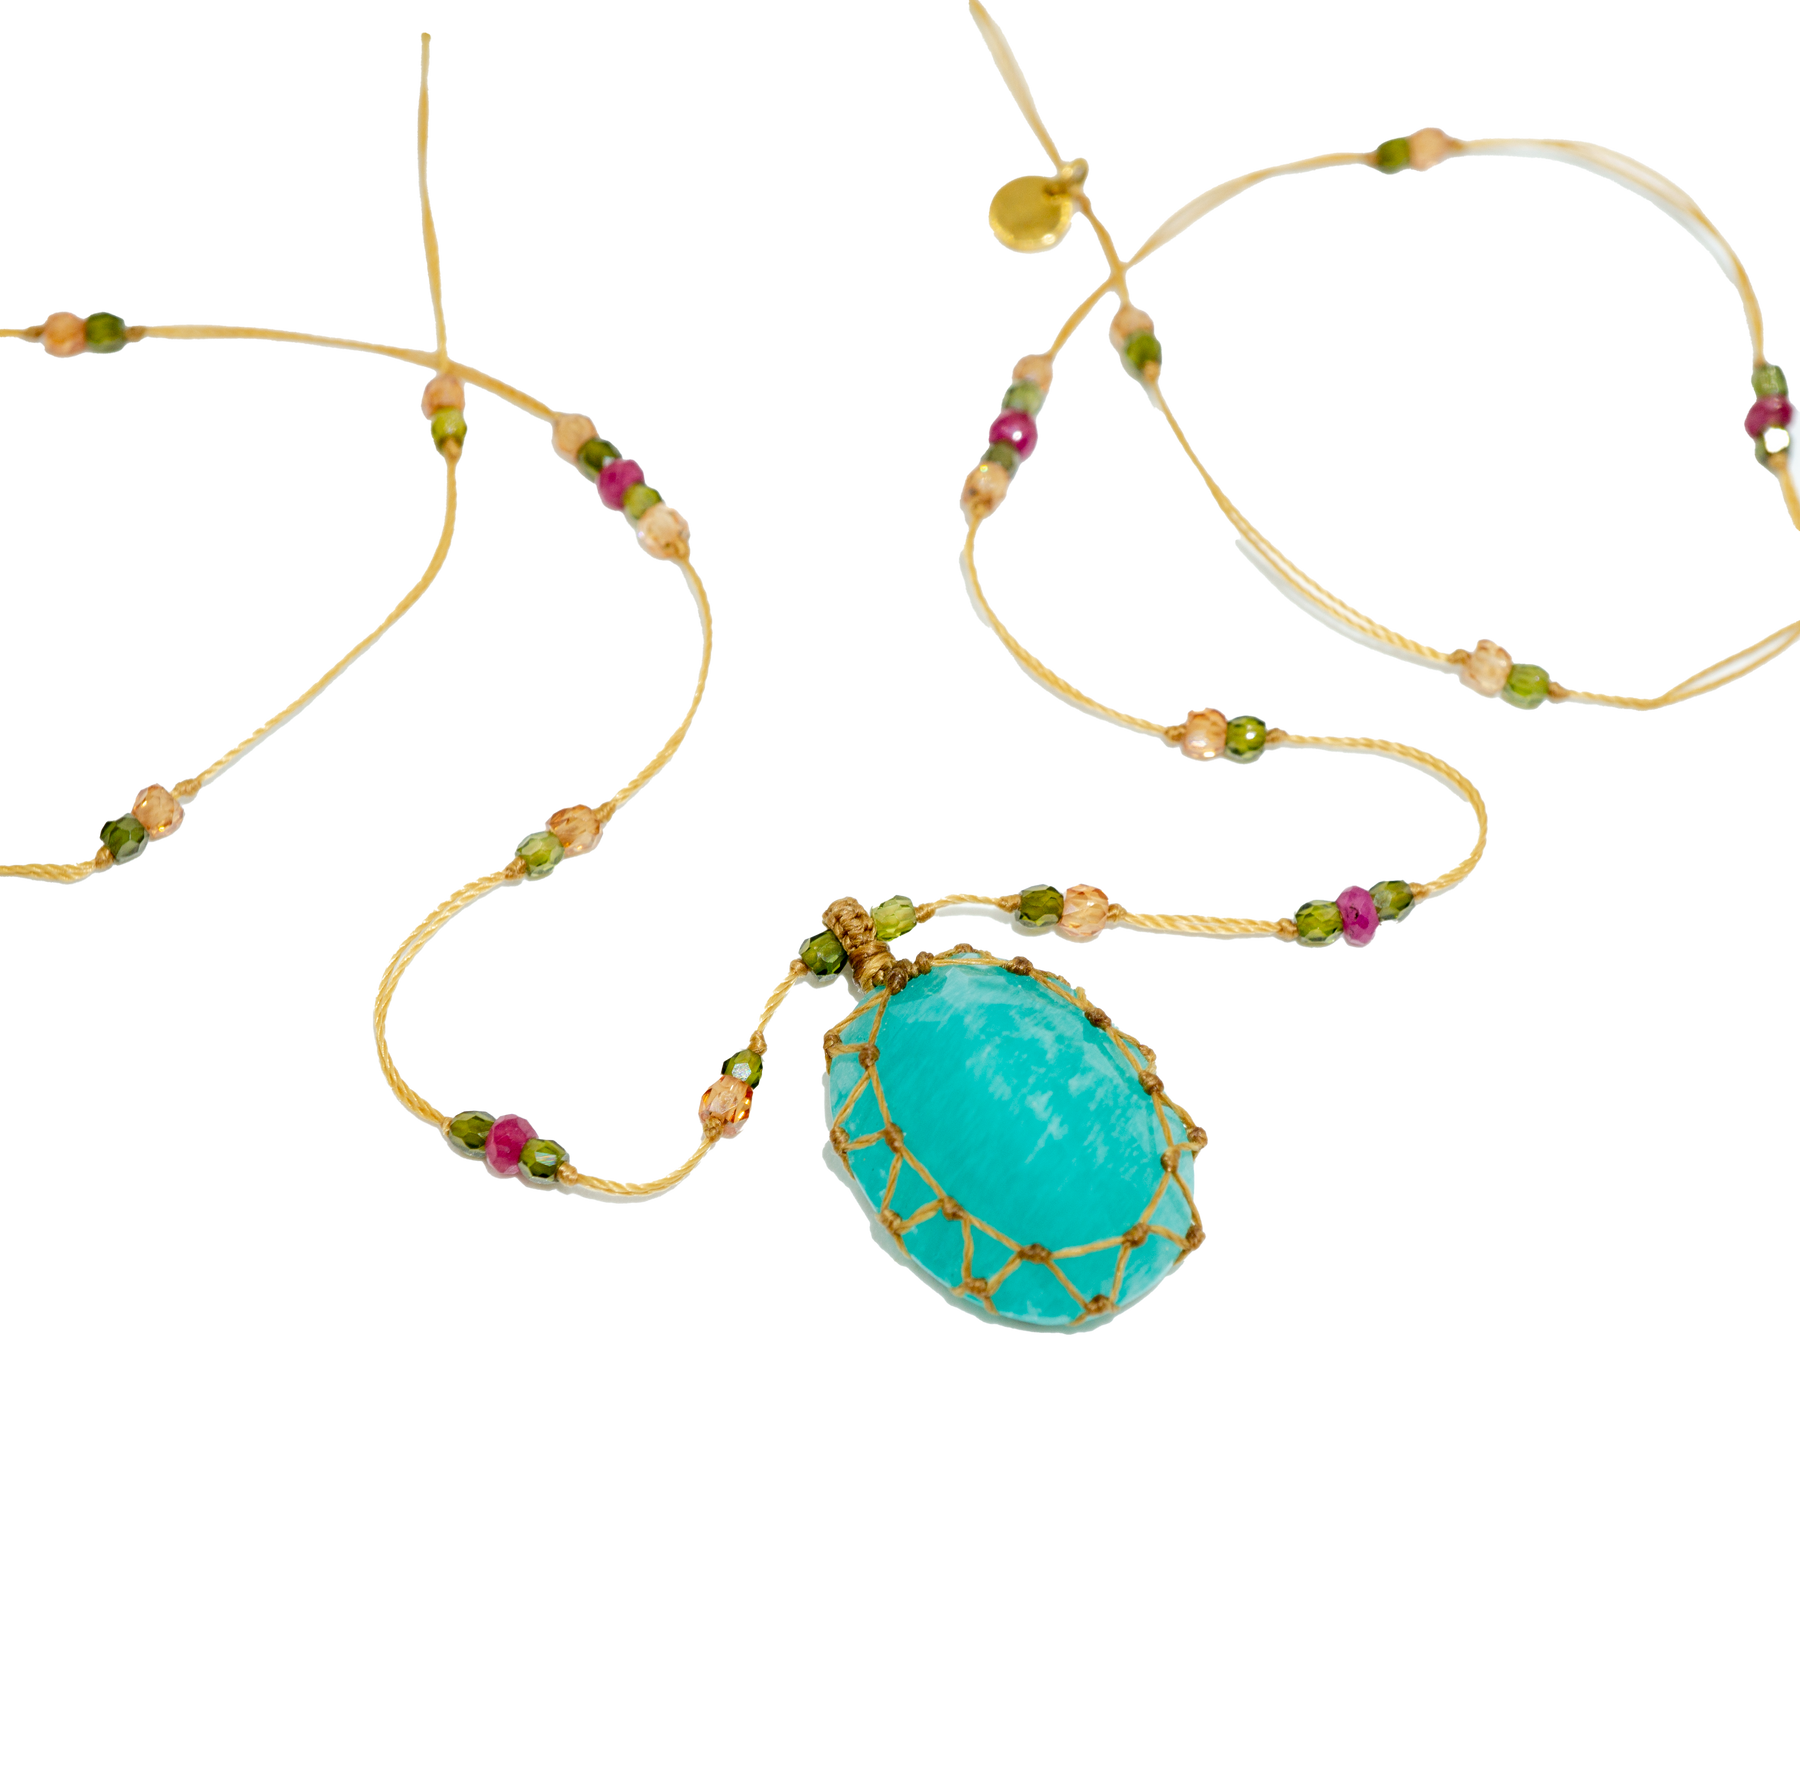 Tibetan Short Necklace - Blue Amazonite - Mix Pink Tourmaline - Beige Thread